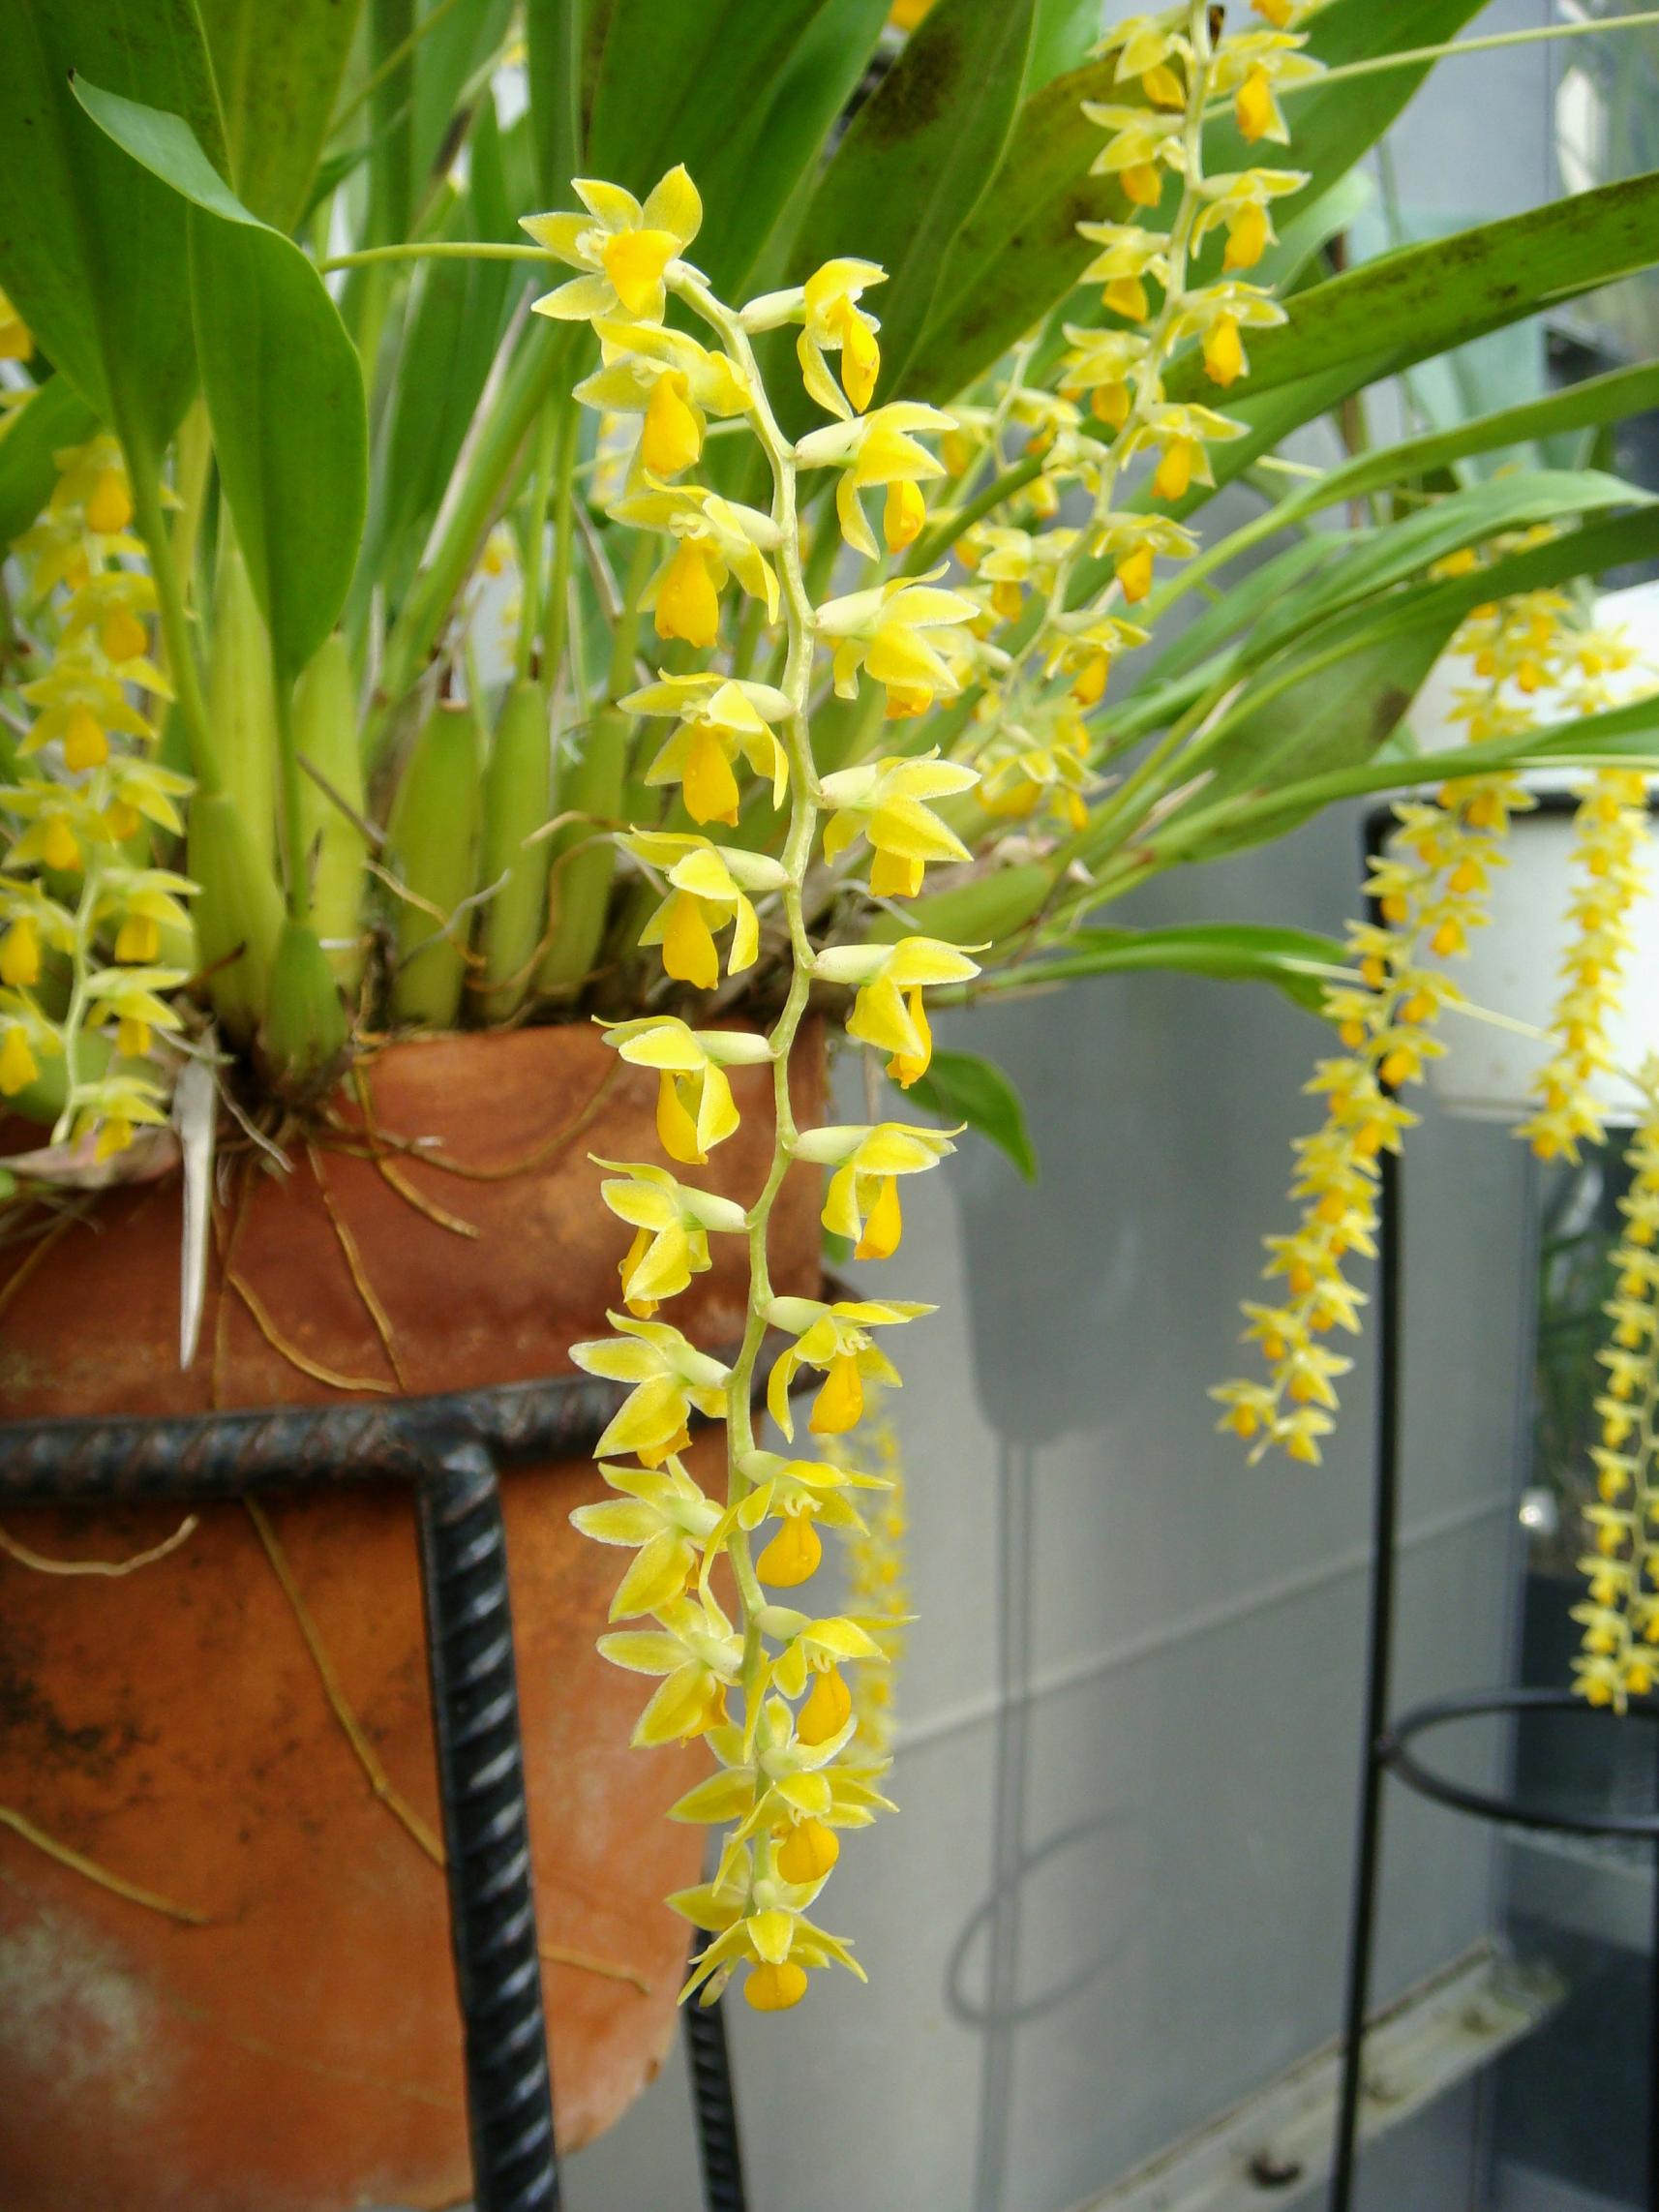 http://orchids.la.coocan.jp/Dendrochilum/Dendrochilum%20cobbianum/DSC03777.JPG